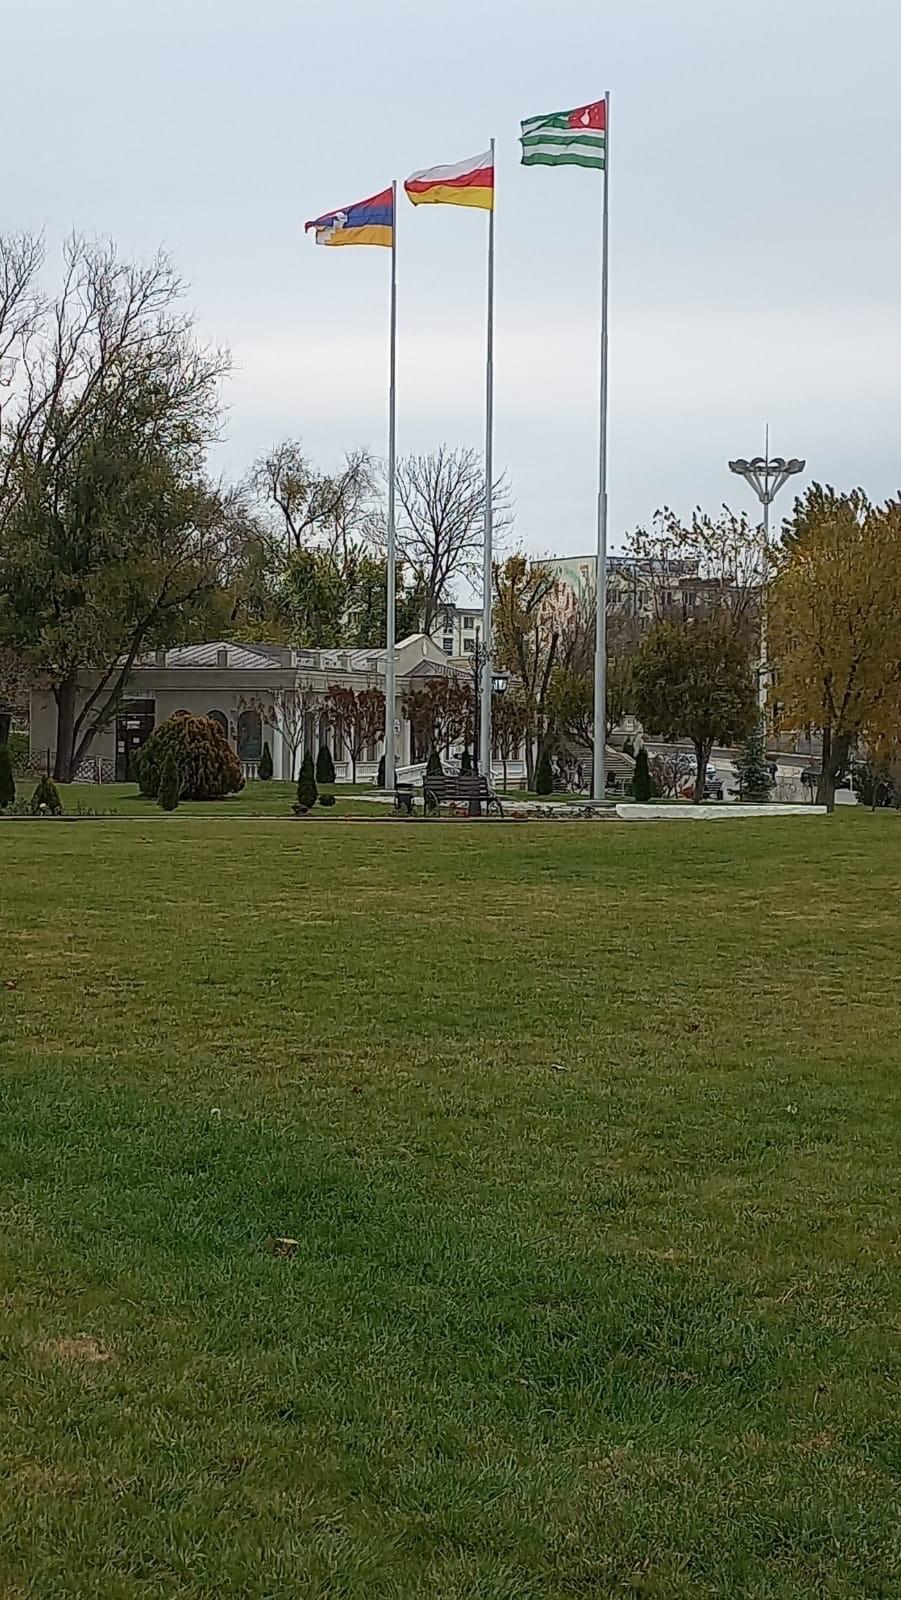 Le drapeau de la Moldavie est lui invisible... En revanche on peut voir les drapeaux de l'Abkhazie, de l'Ossétie du Sud-Alanie et du Haut-Karabagh, seuls "États" (pas pour l'ONU) à avoir reconnu la Transnistrie [Fred Scola]